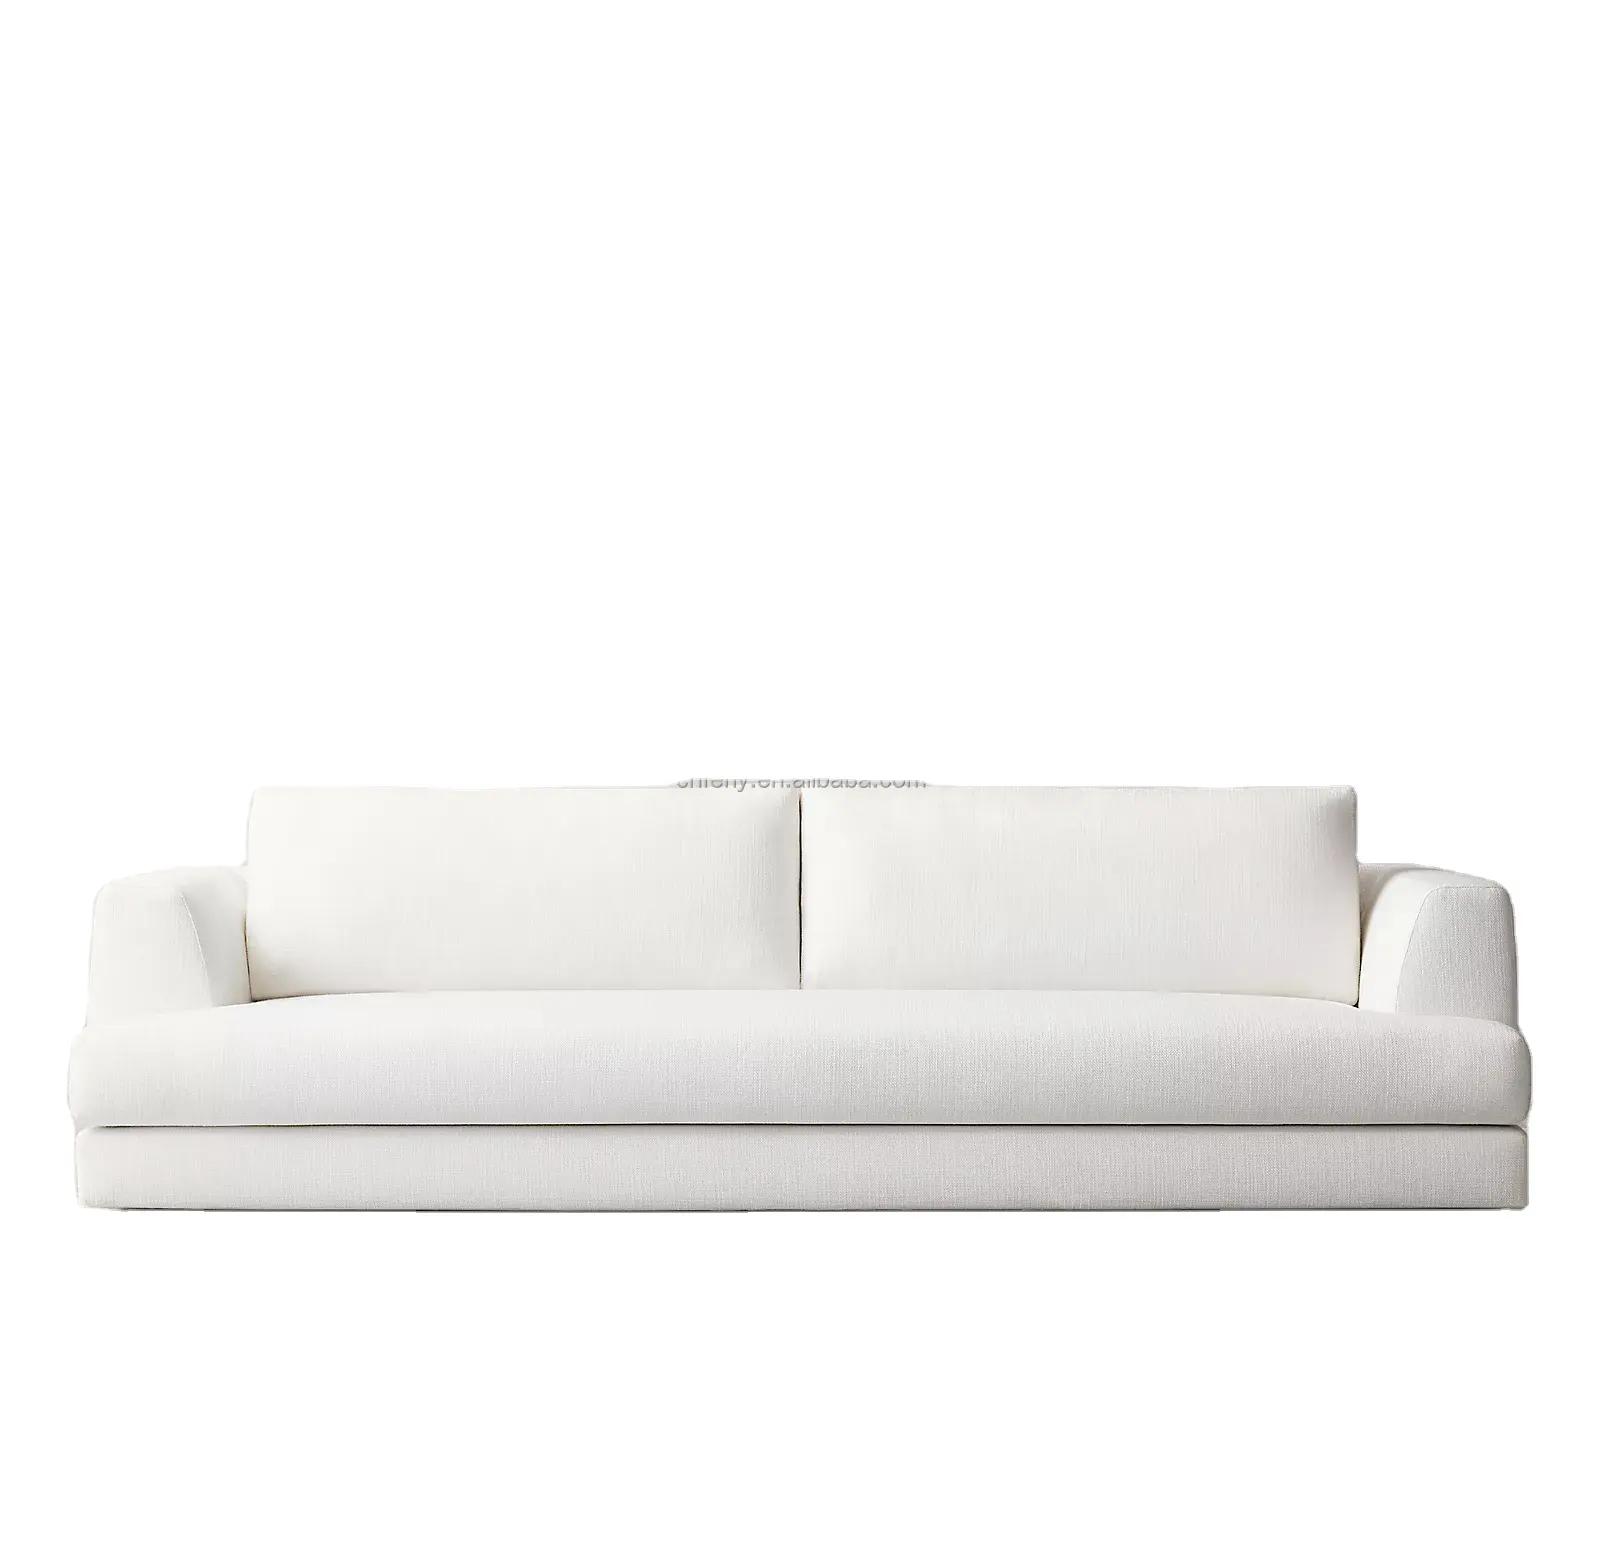 Oturma odası mobilya kanepe ev mobilya ince eğrileri ve aşağı karışımı yastıkları eğimli blok arms kanepe çift koltuklu kanepe